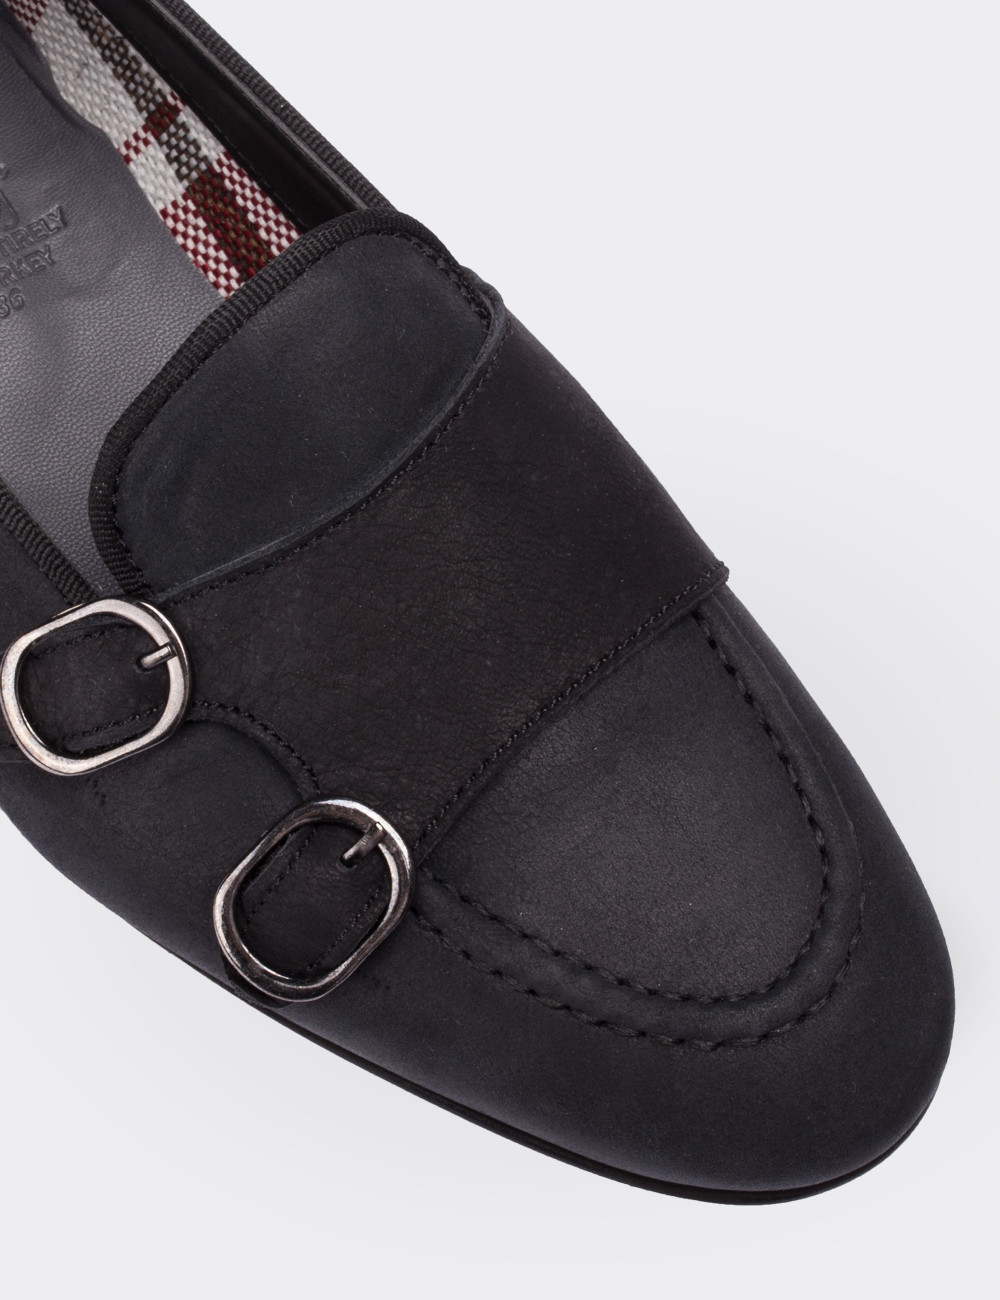 Black Nubuck Leather Loafers - 01617ZSYHM01